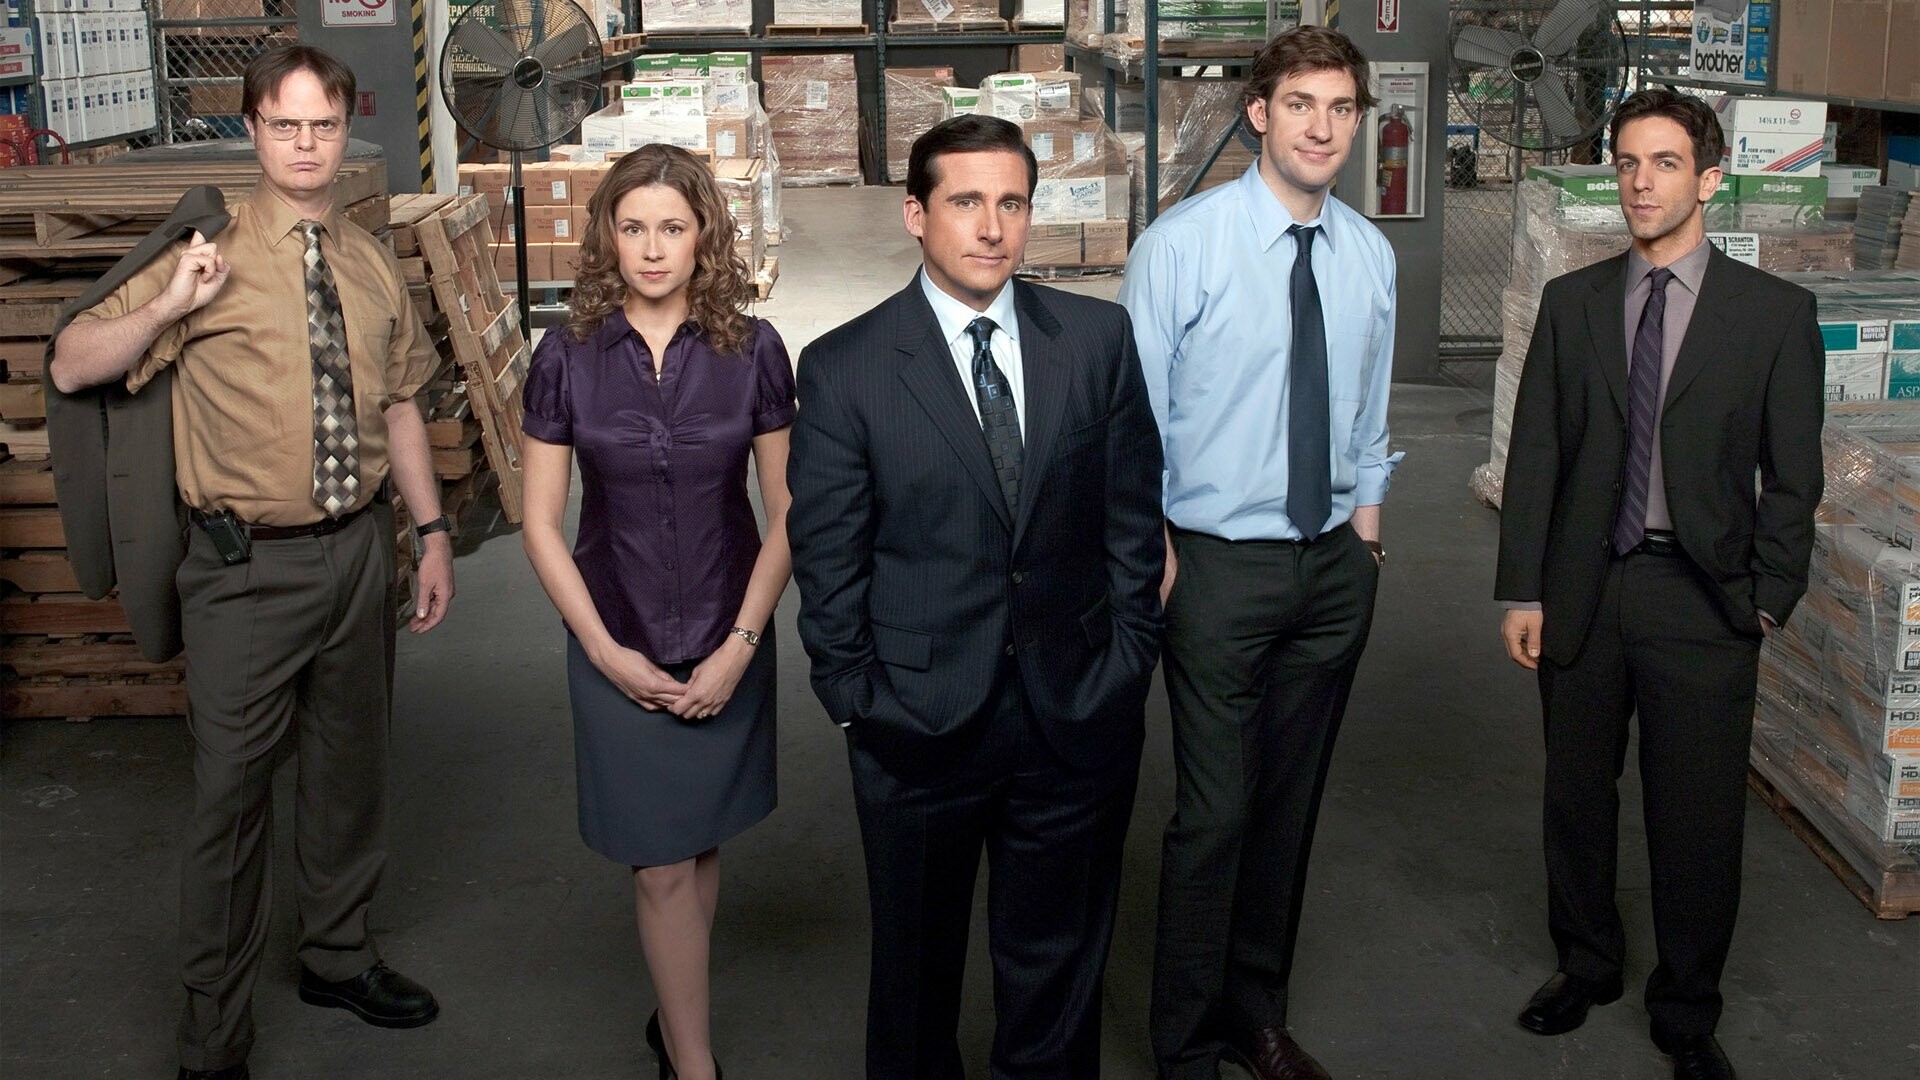 The Office (TV Series): Michael Scott, Dwight Schrute, Jim Halpert, Pam Beesly, Ryan Howard. 1920x1080 Full HD Background.